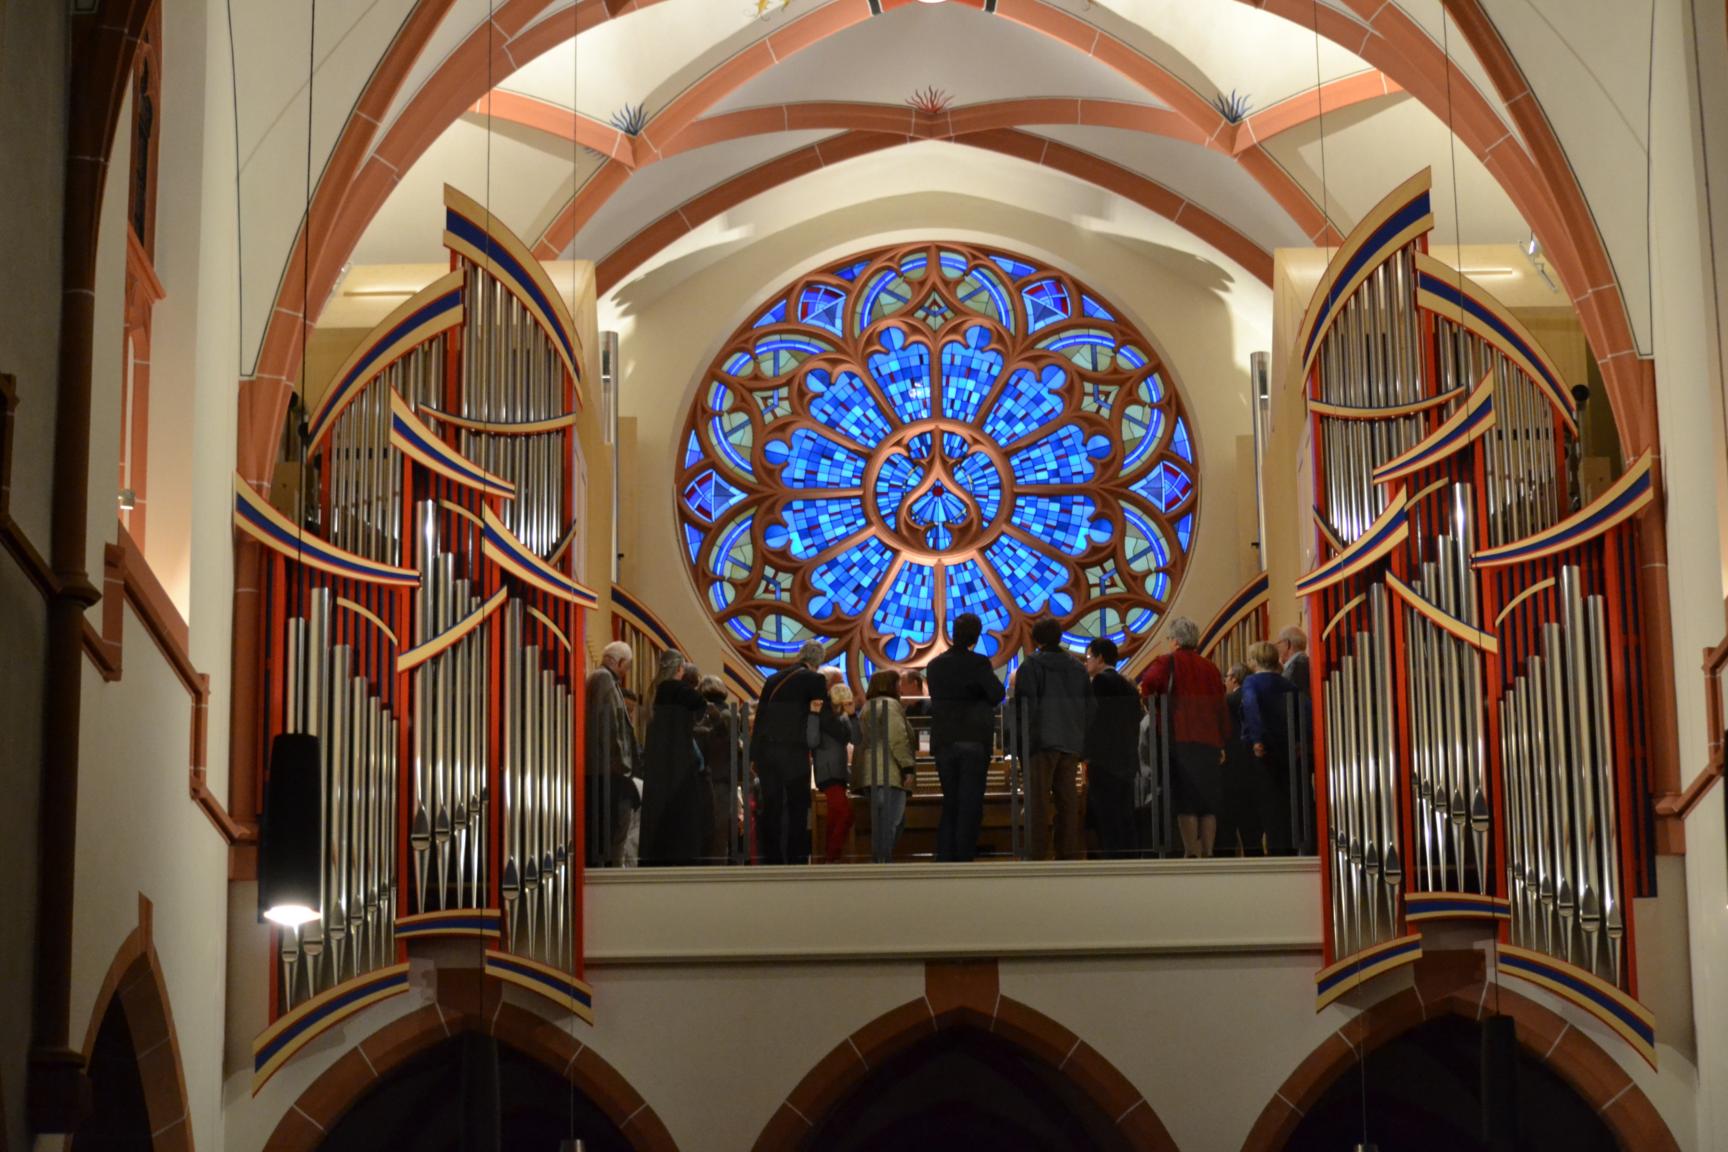 Die Eule-Orgel von St. Bonifatius wurde vor 5 Jahren geweiht (Bild vom 12.09.2015)